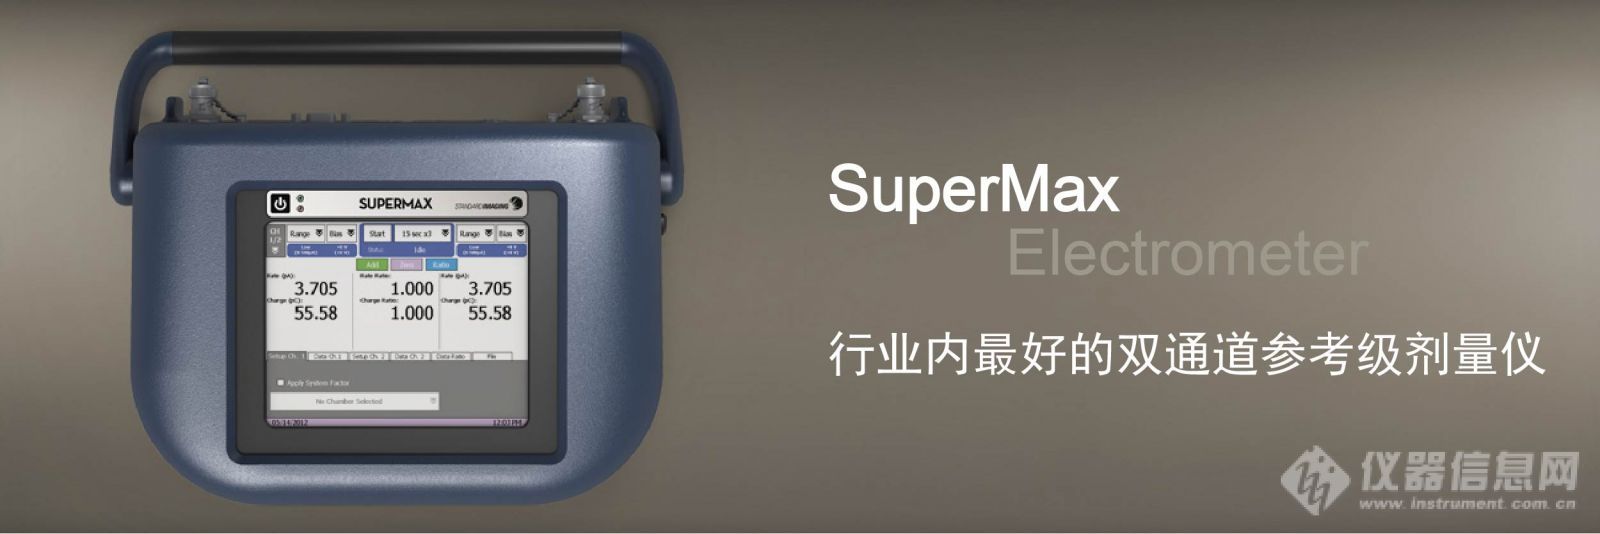 1参考级剂量仪SuperMax.jpg